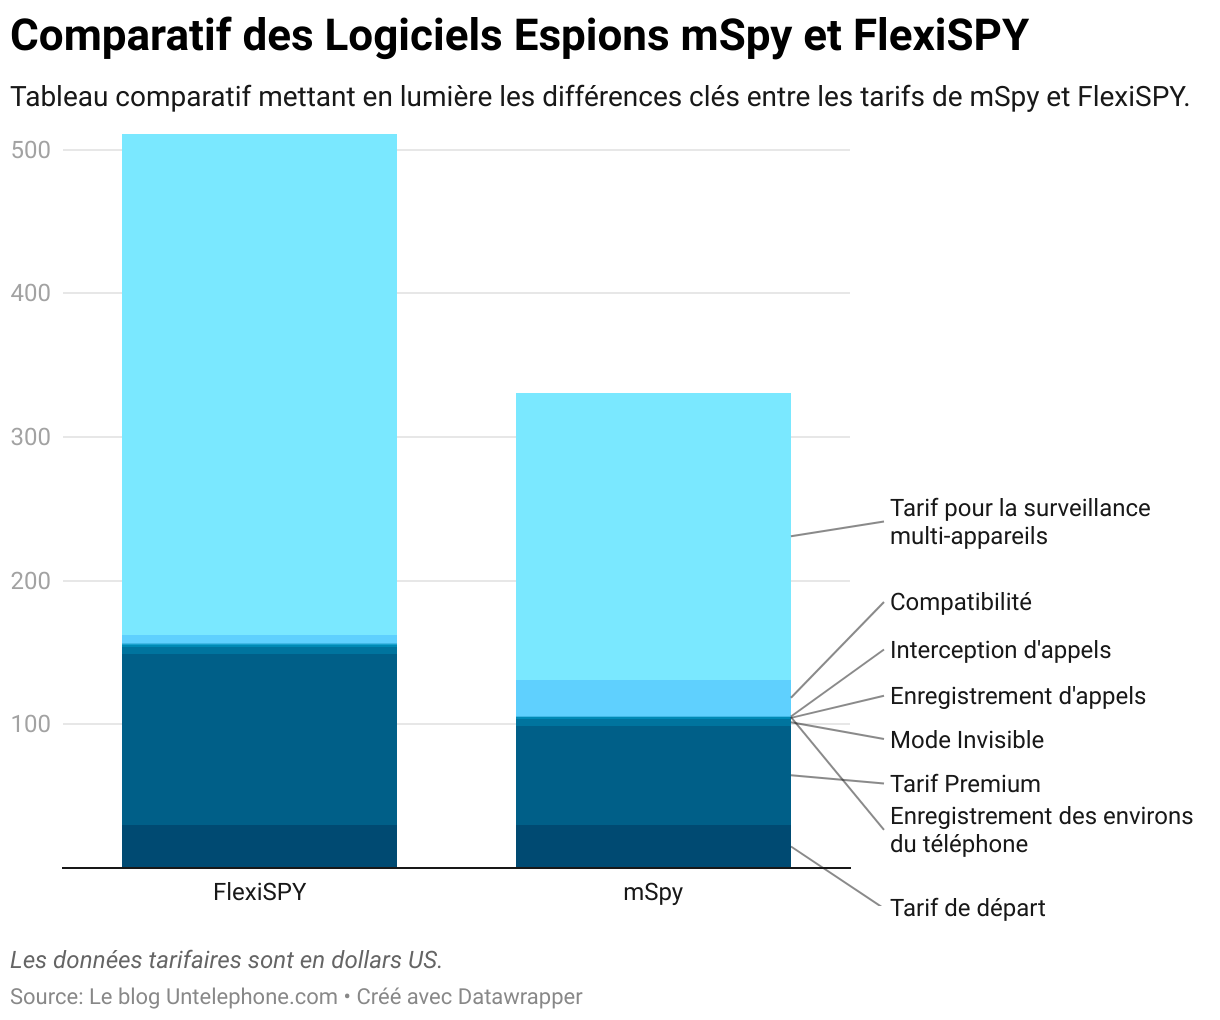 Tableau comparatif entre mSpy et FlexiSPY, illustrant les différences de tarification, fonctionnalités et support client entre les deux logiciels espions.